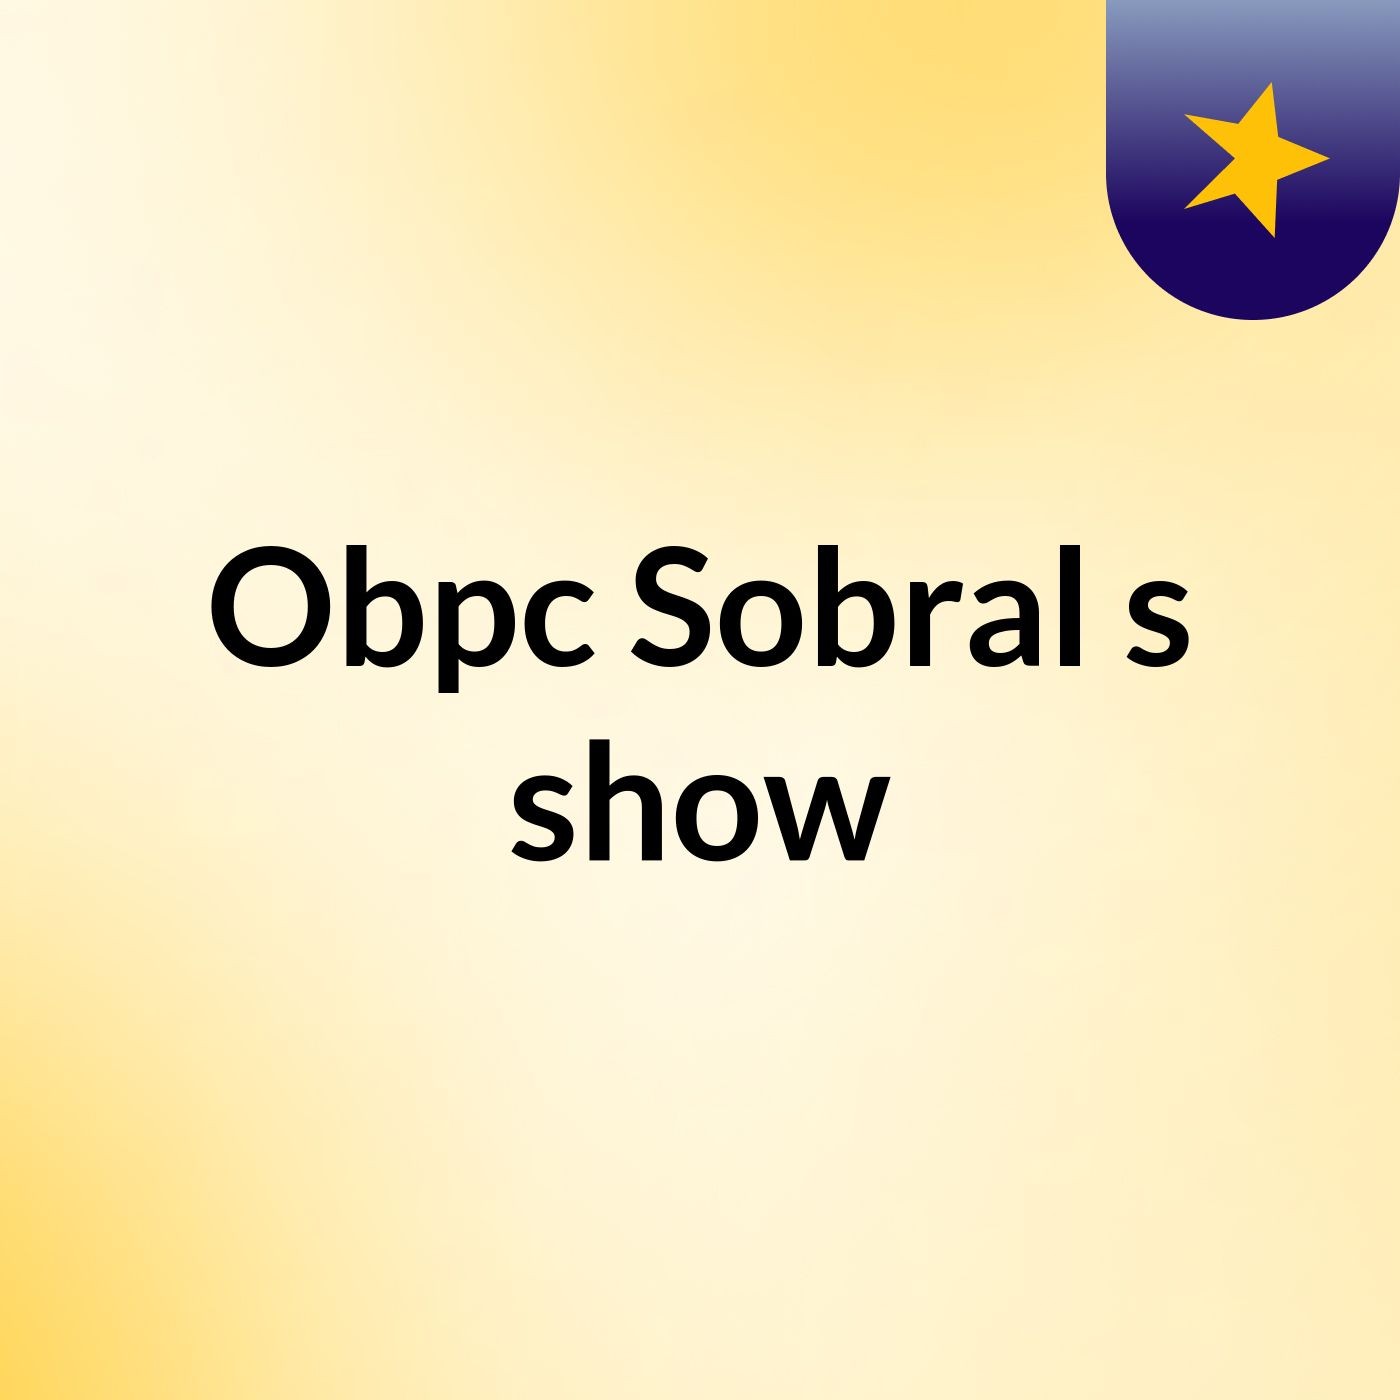 Obpc Sobral's show